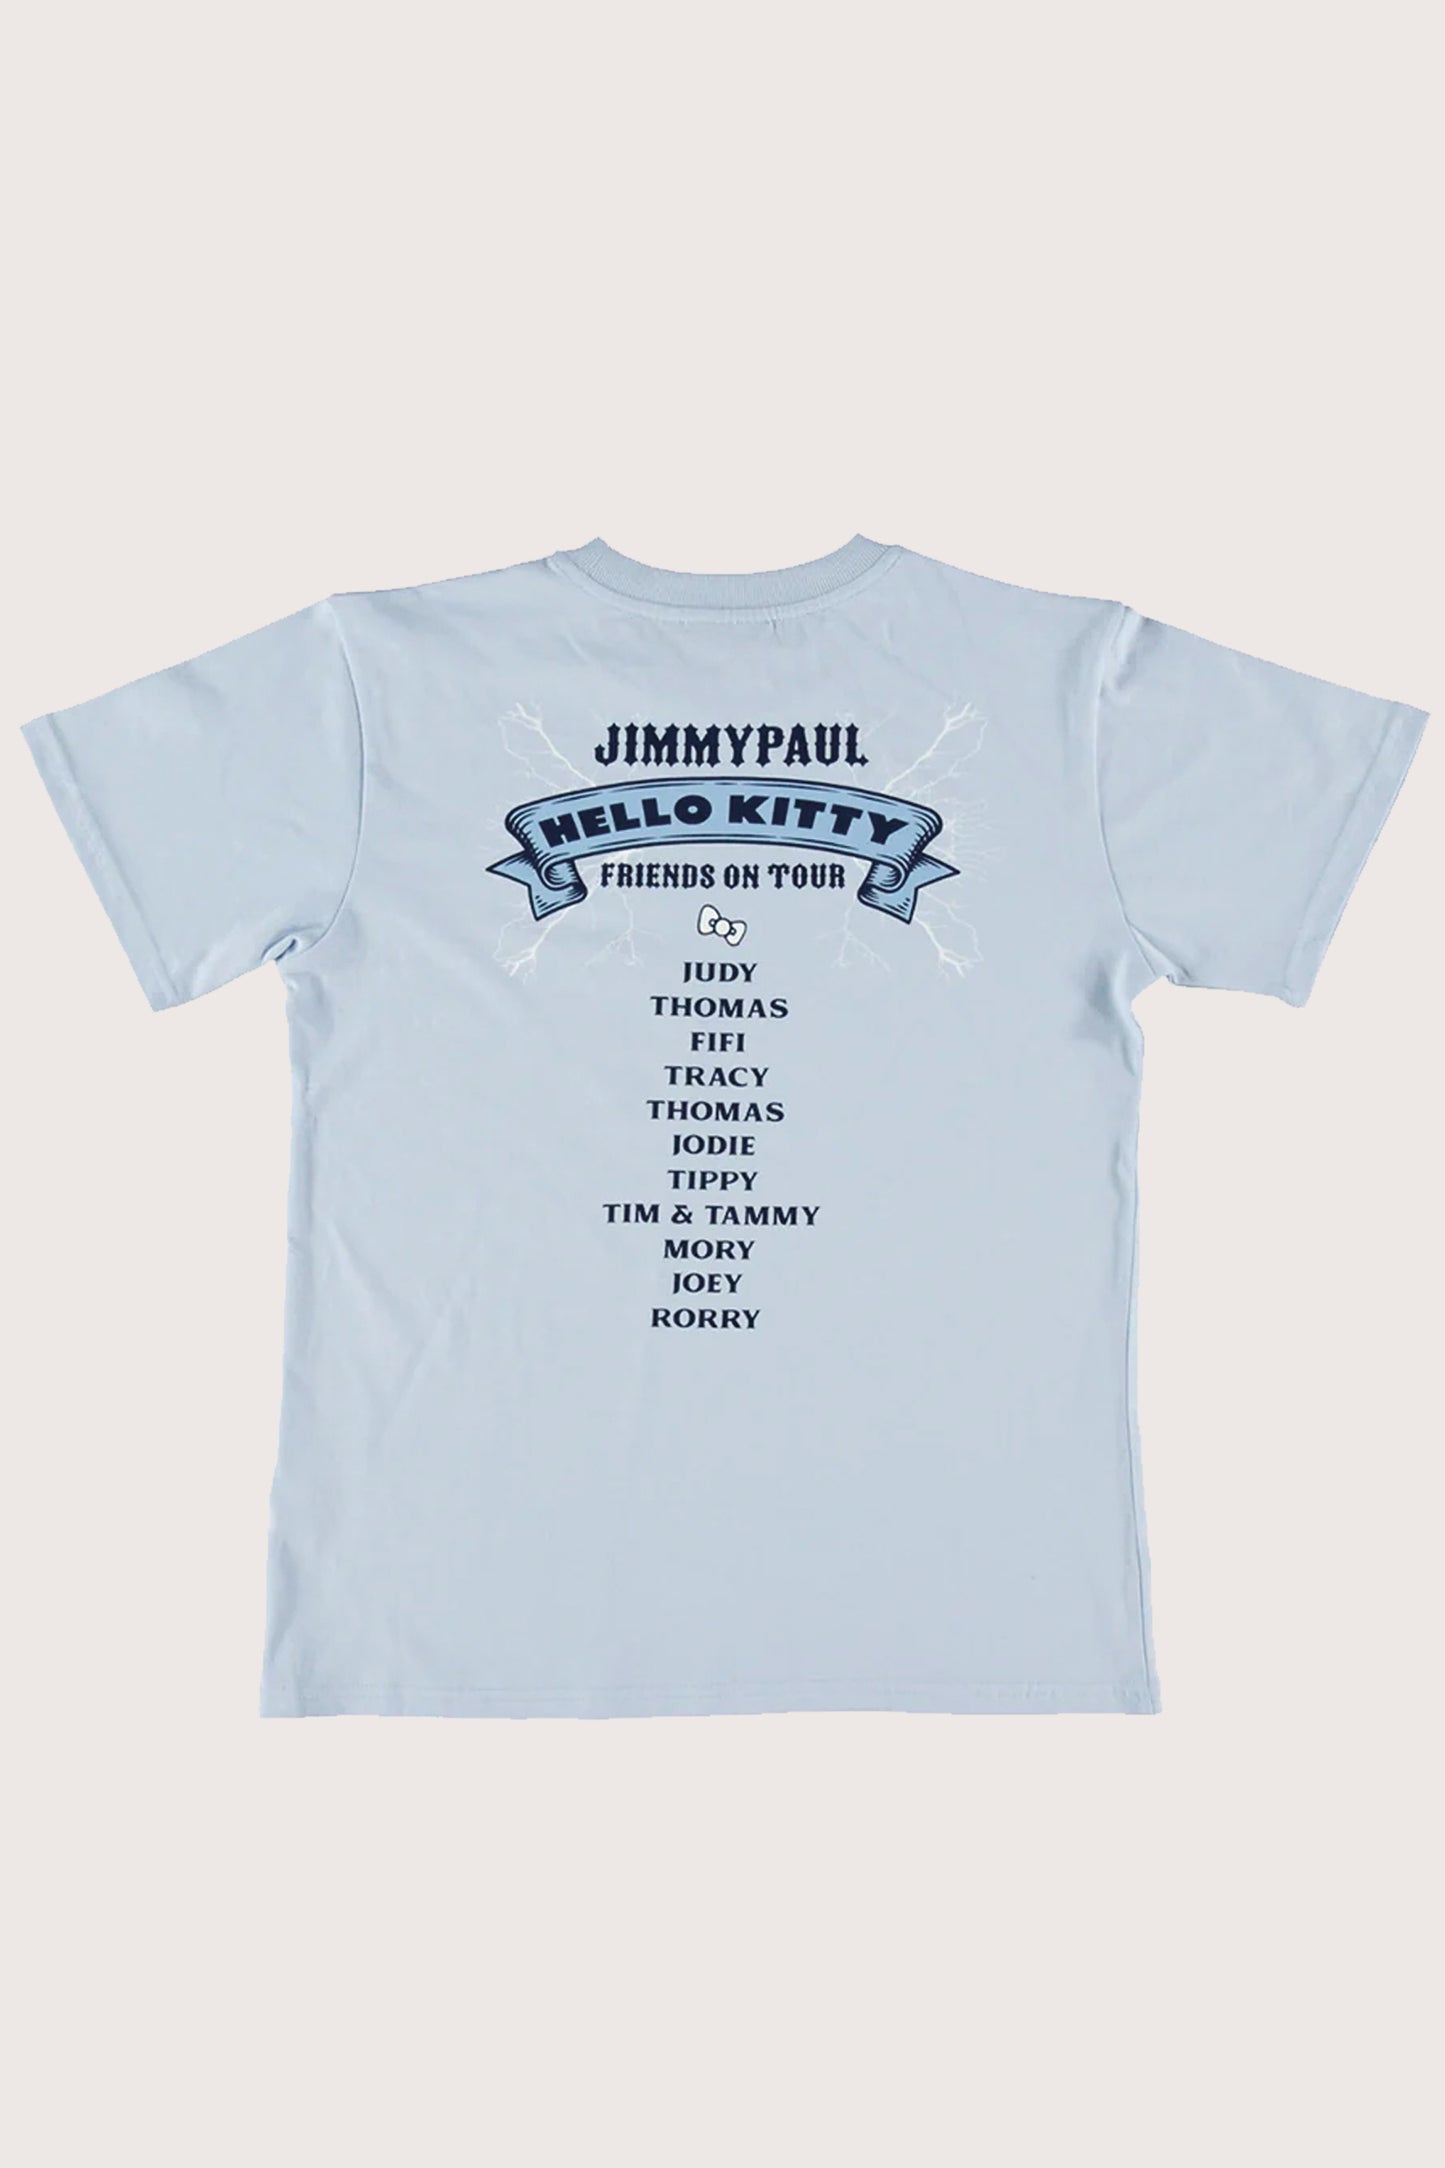 JimmyPaul x Hello Kitty - Blue Hello Kitty Friends on Tour Top